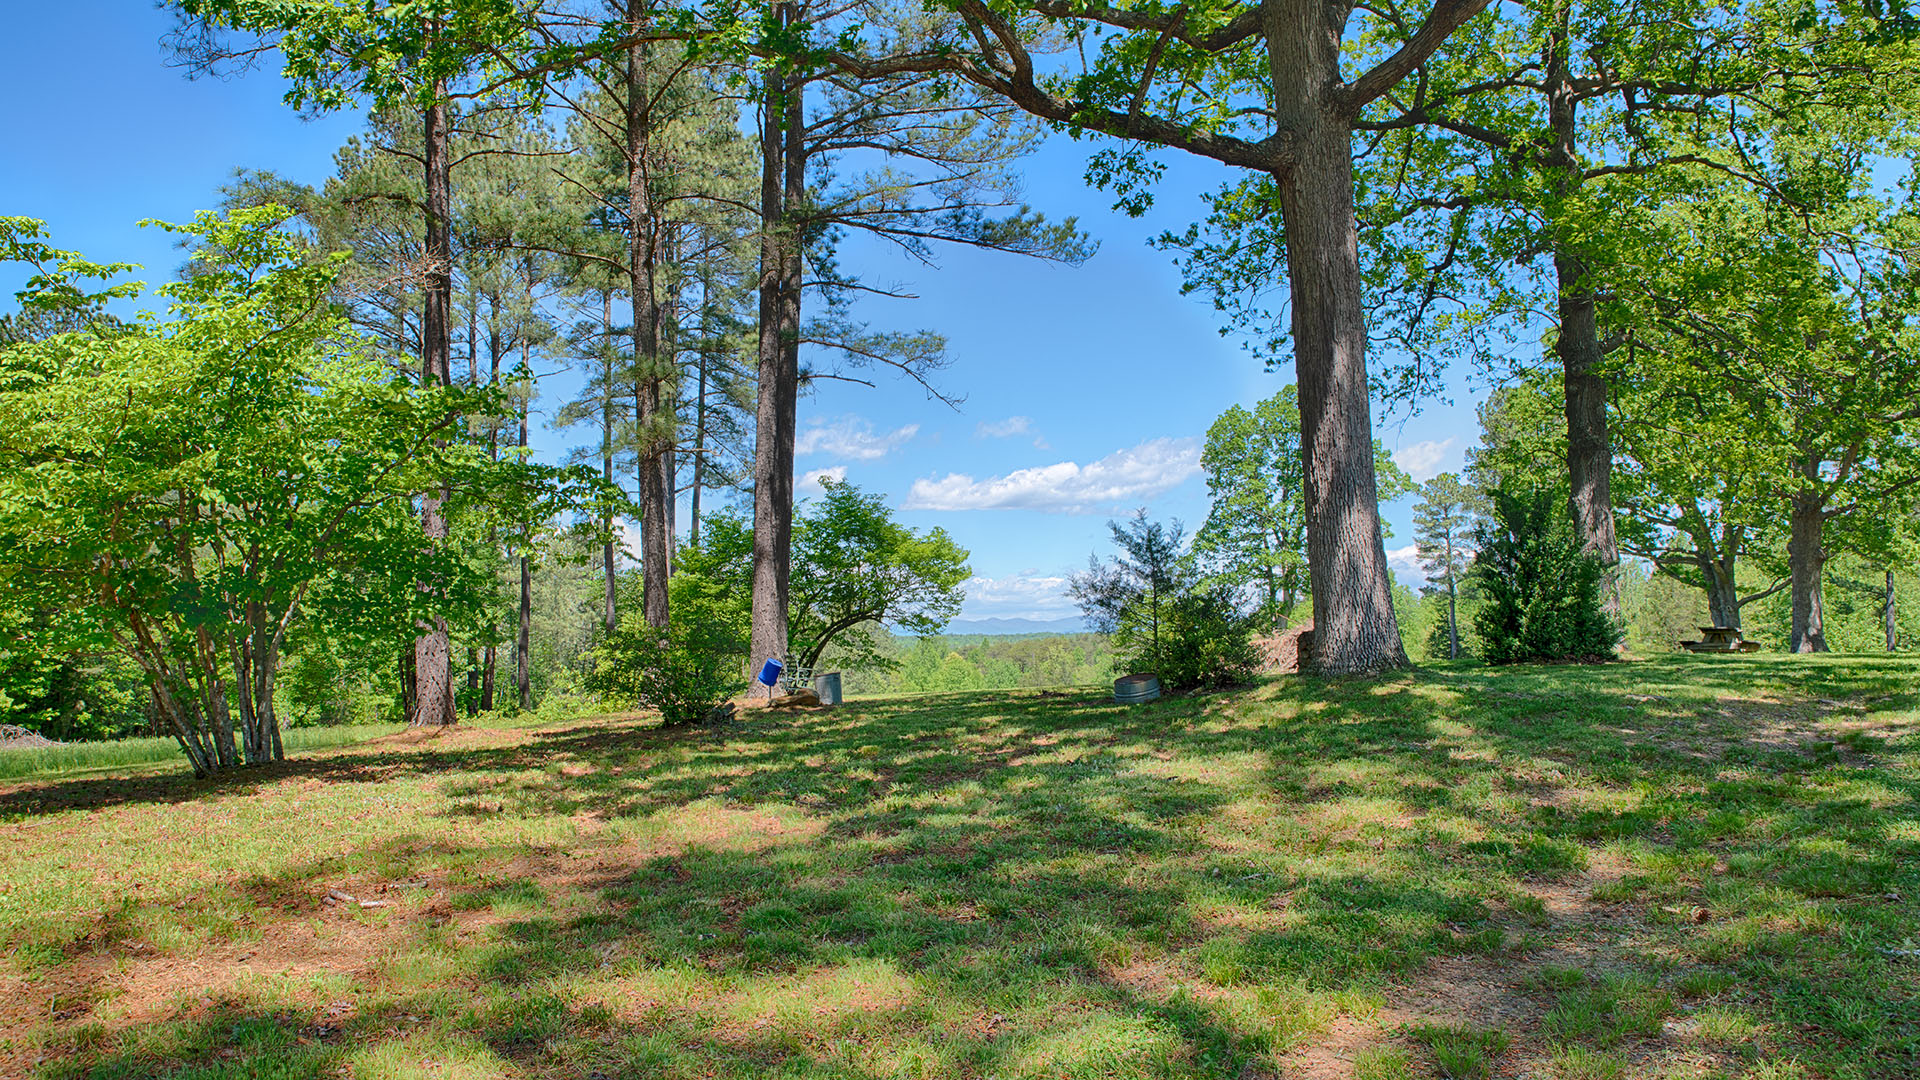  Albemarle County VA Estate Land for Sale